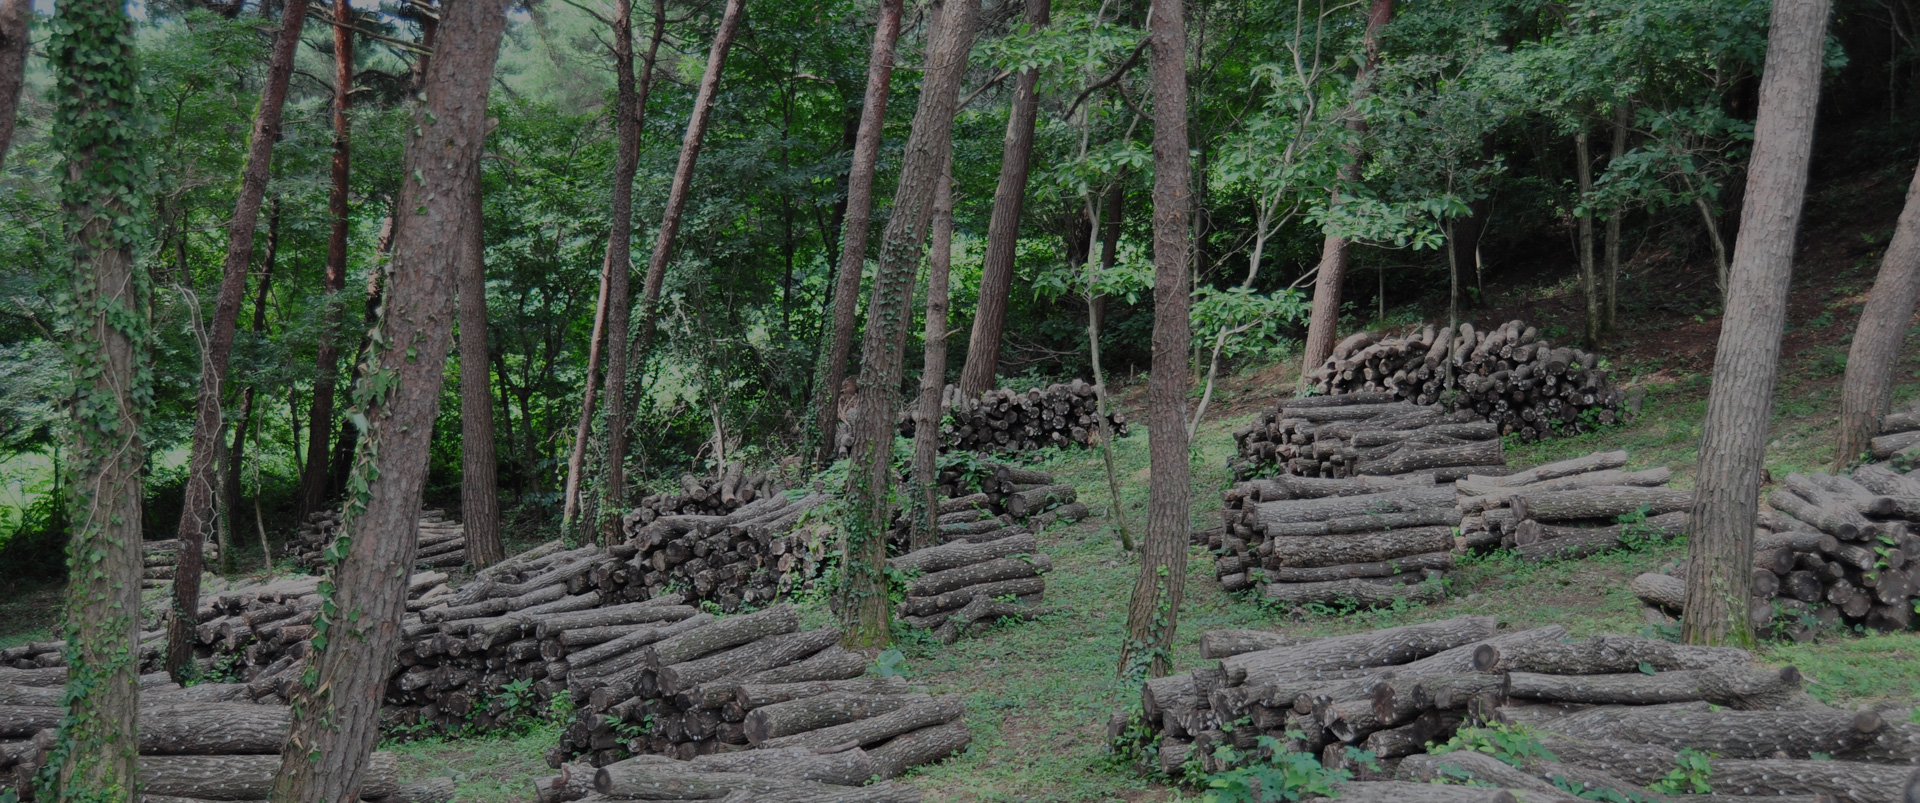 숲에서 나무들 사이에 표고원목재배를 하여 원목들을 정리하여 여러군데 원목 들이 쌓여있는 모습